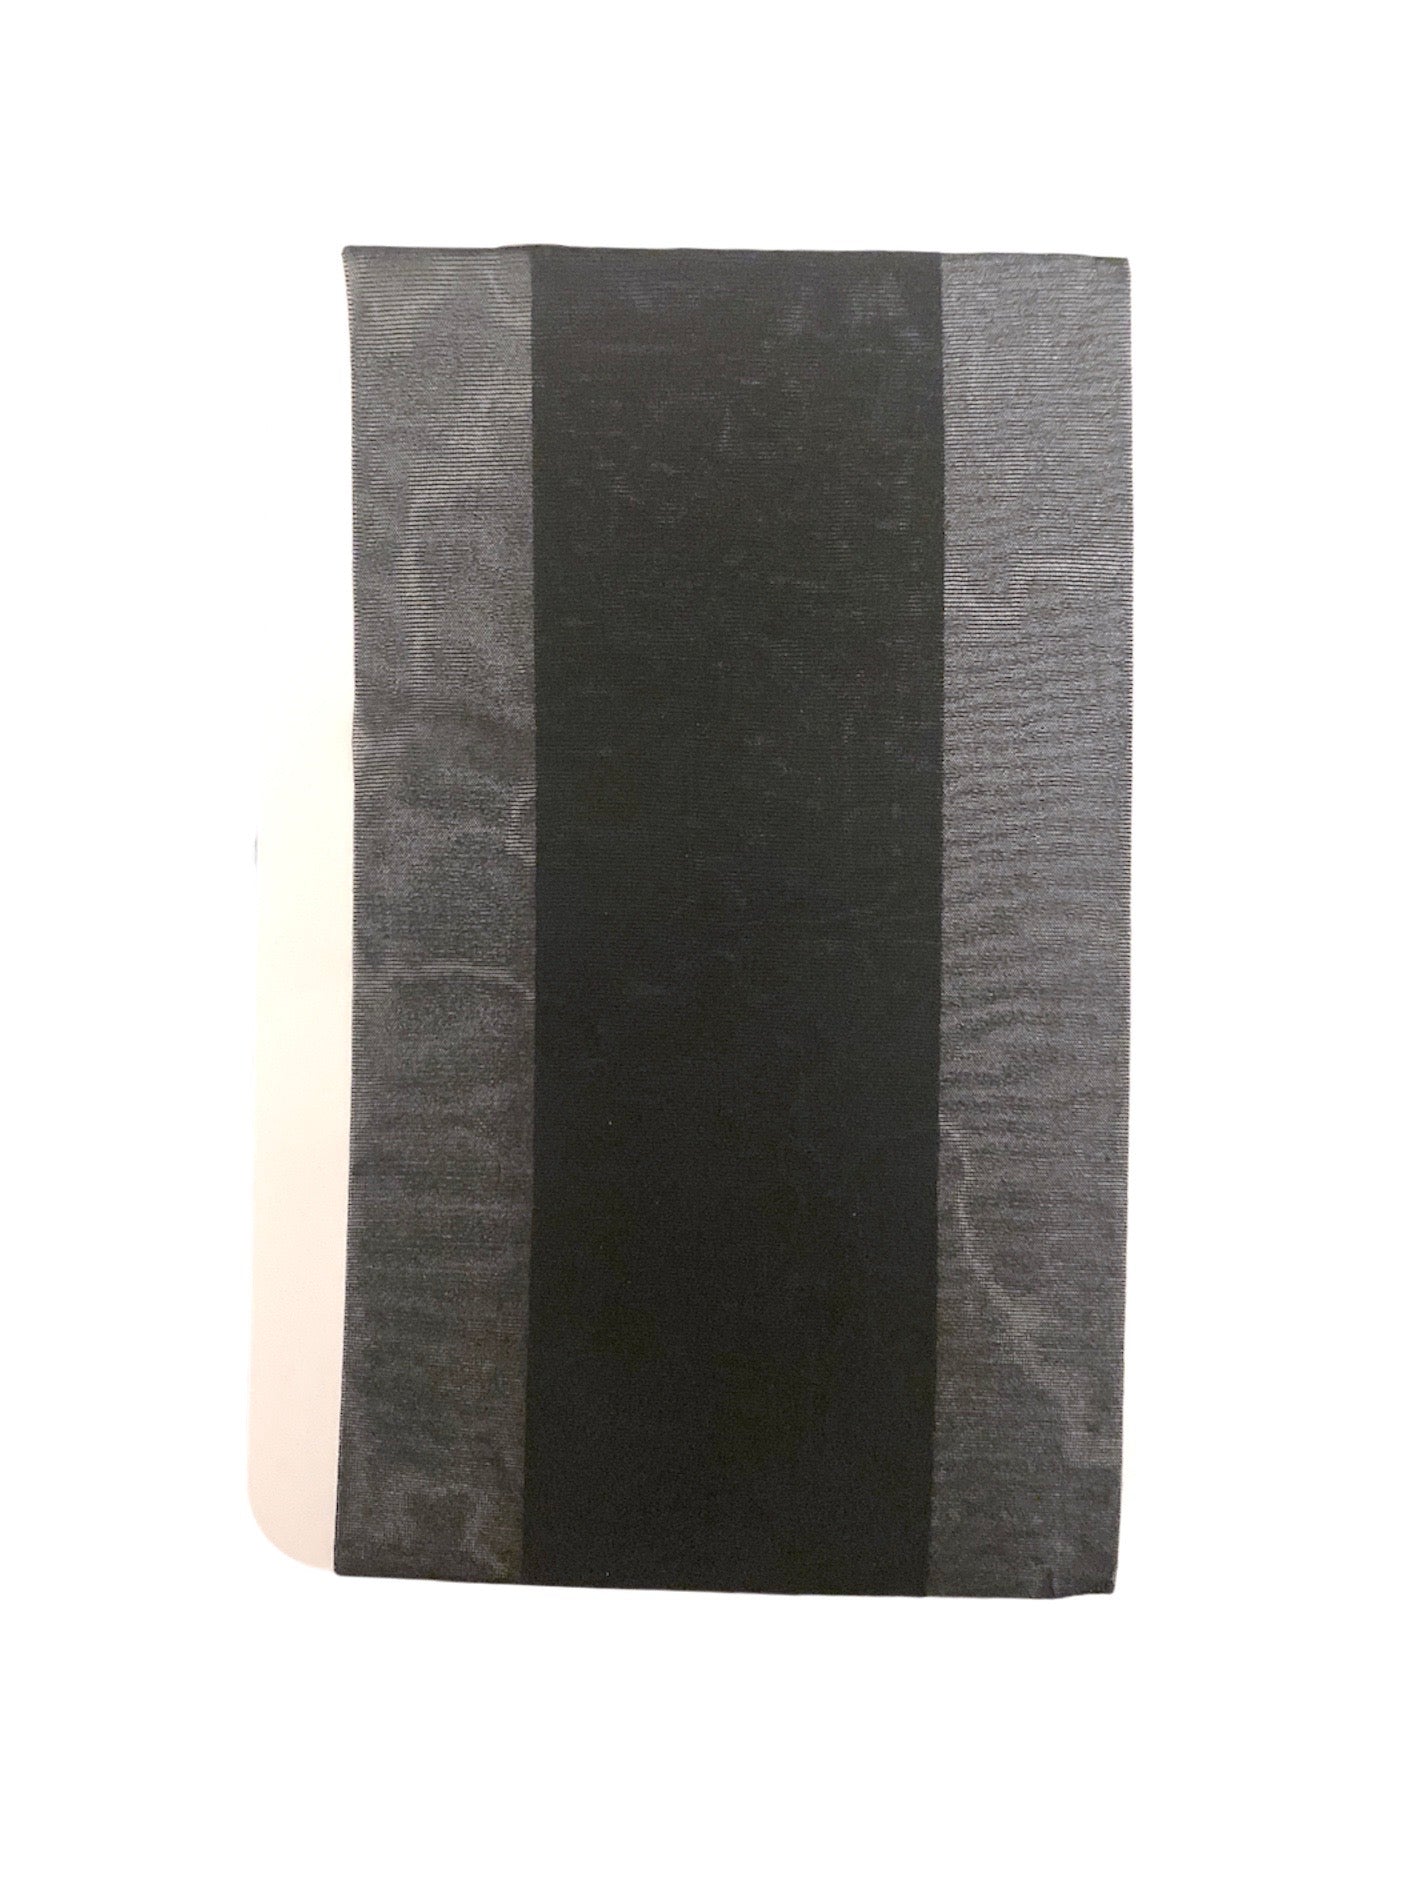 Collants noir transparent (x12)